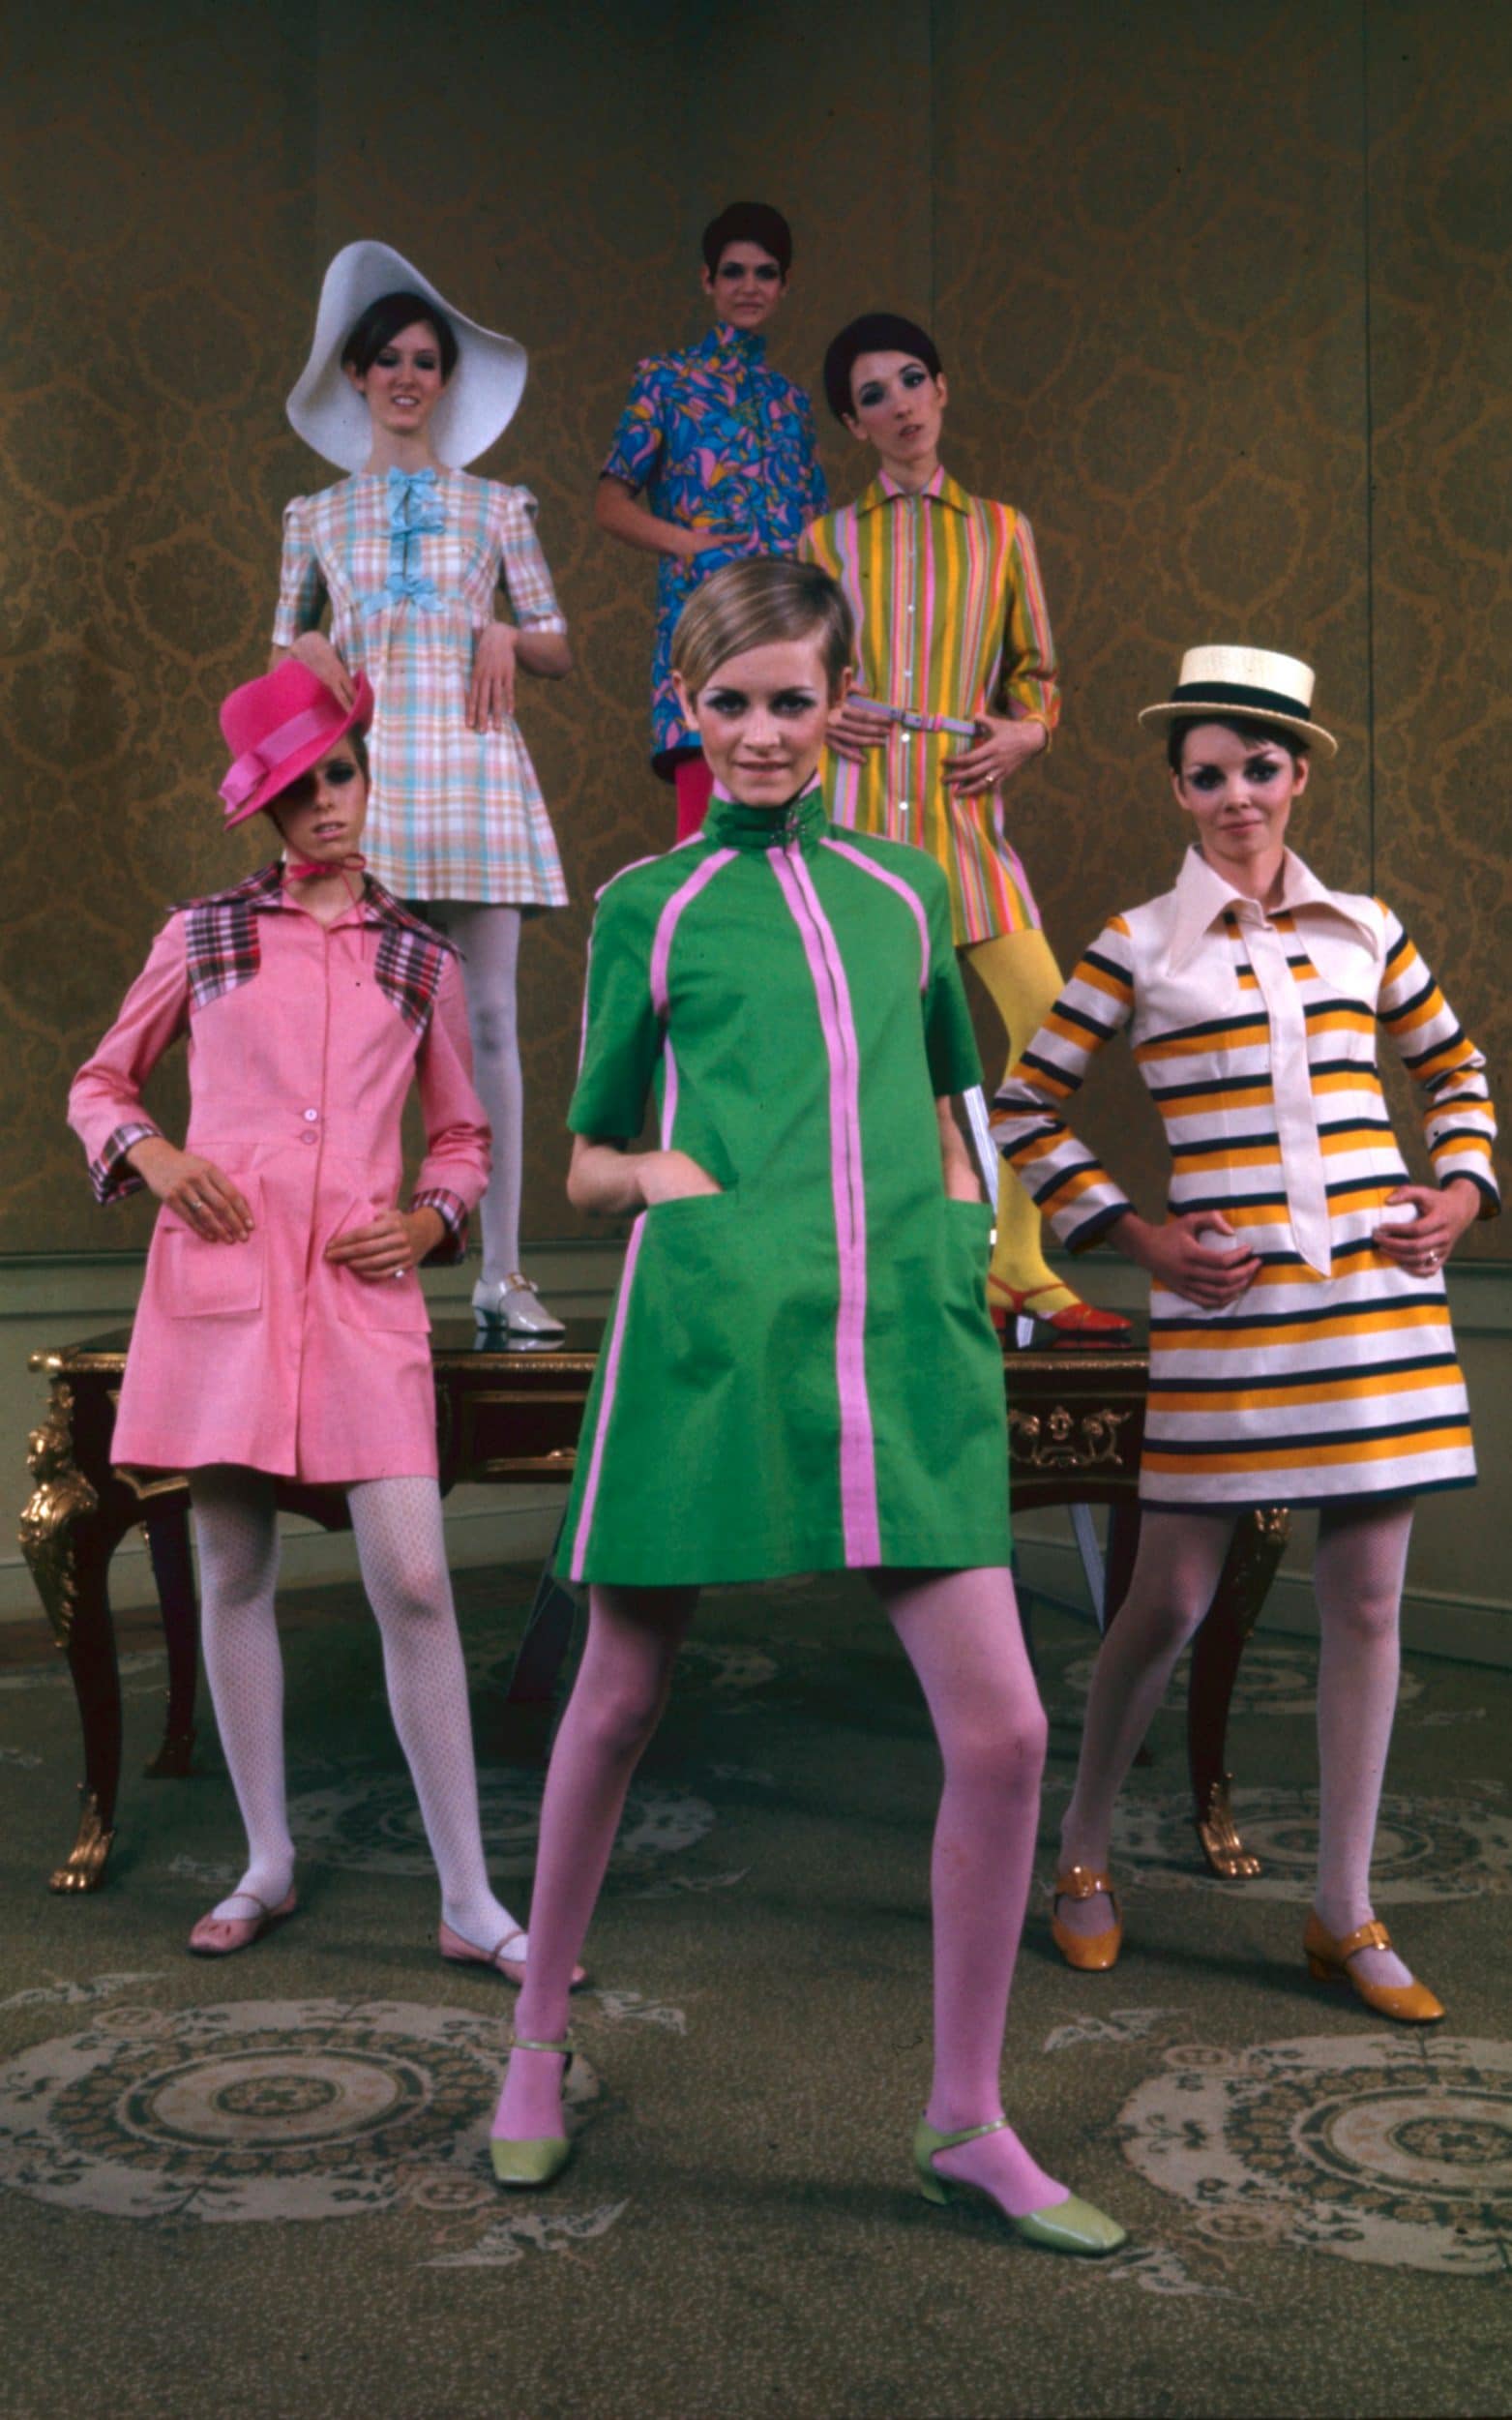 Tượng đài thời trang thập niên 60 Twiggy nổi tiếng với những chiếc đầm suôn ngắn và tất chân màu sắc